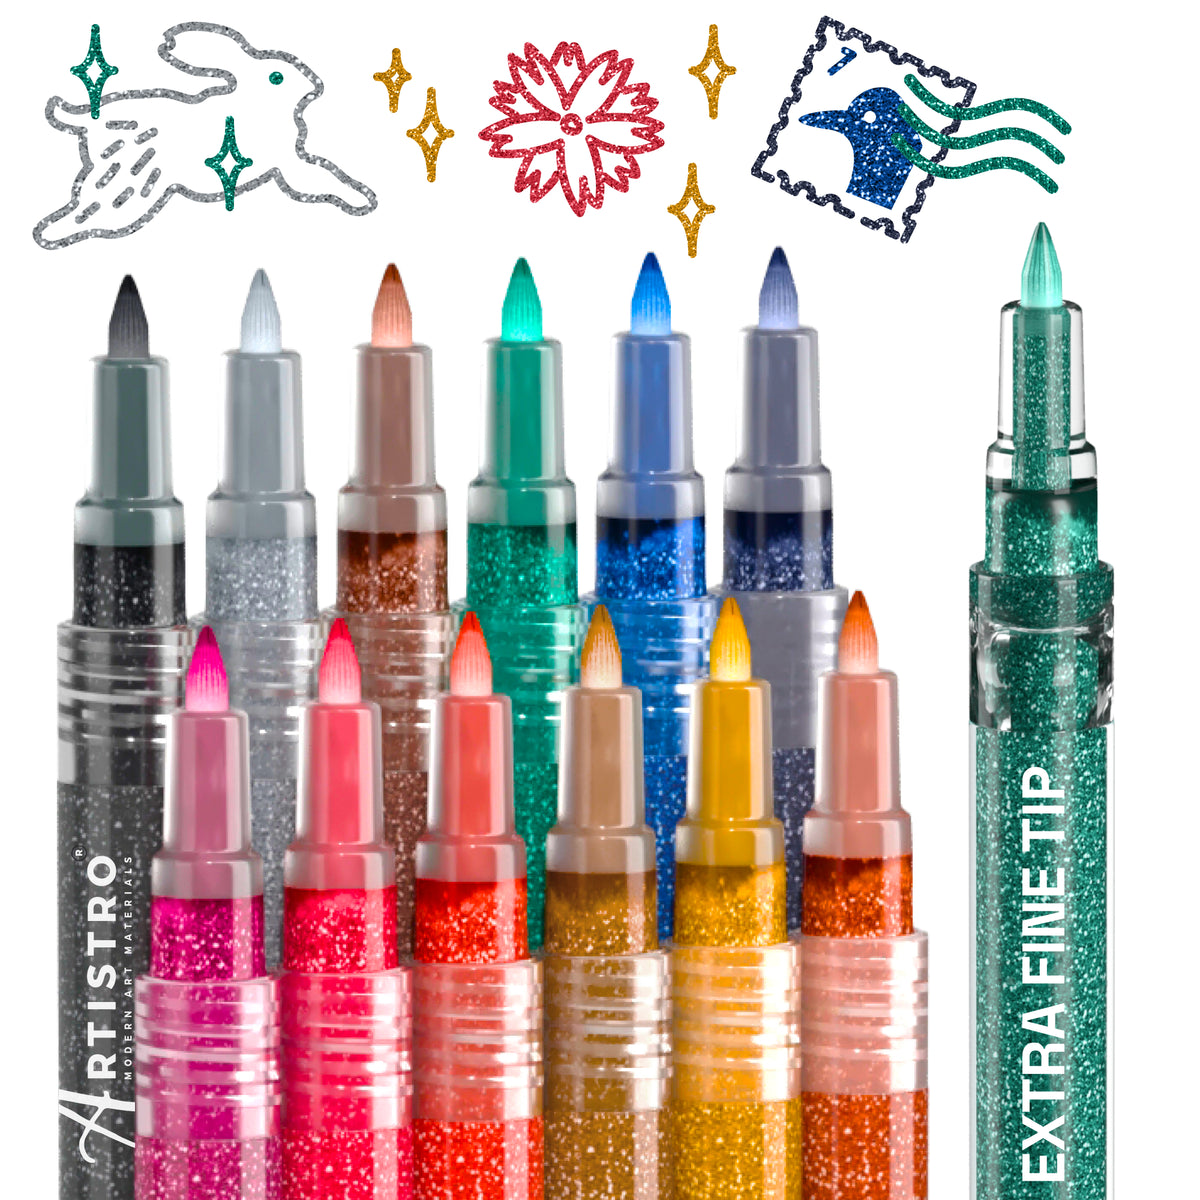 KINGART® PRO Acrylic Paint Pens, 2mm Medium Tip Size, Set of 12 Unique  Colors